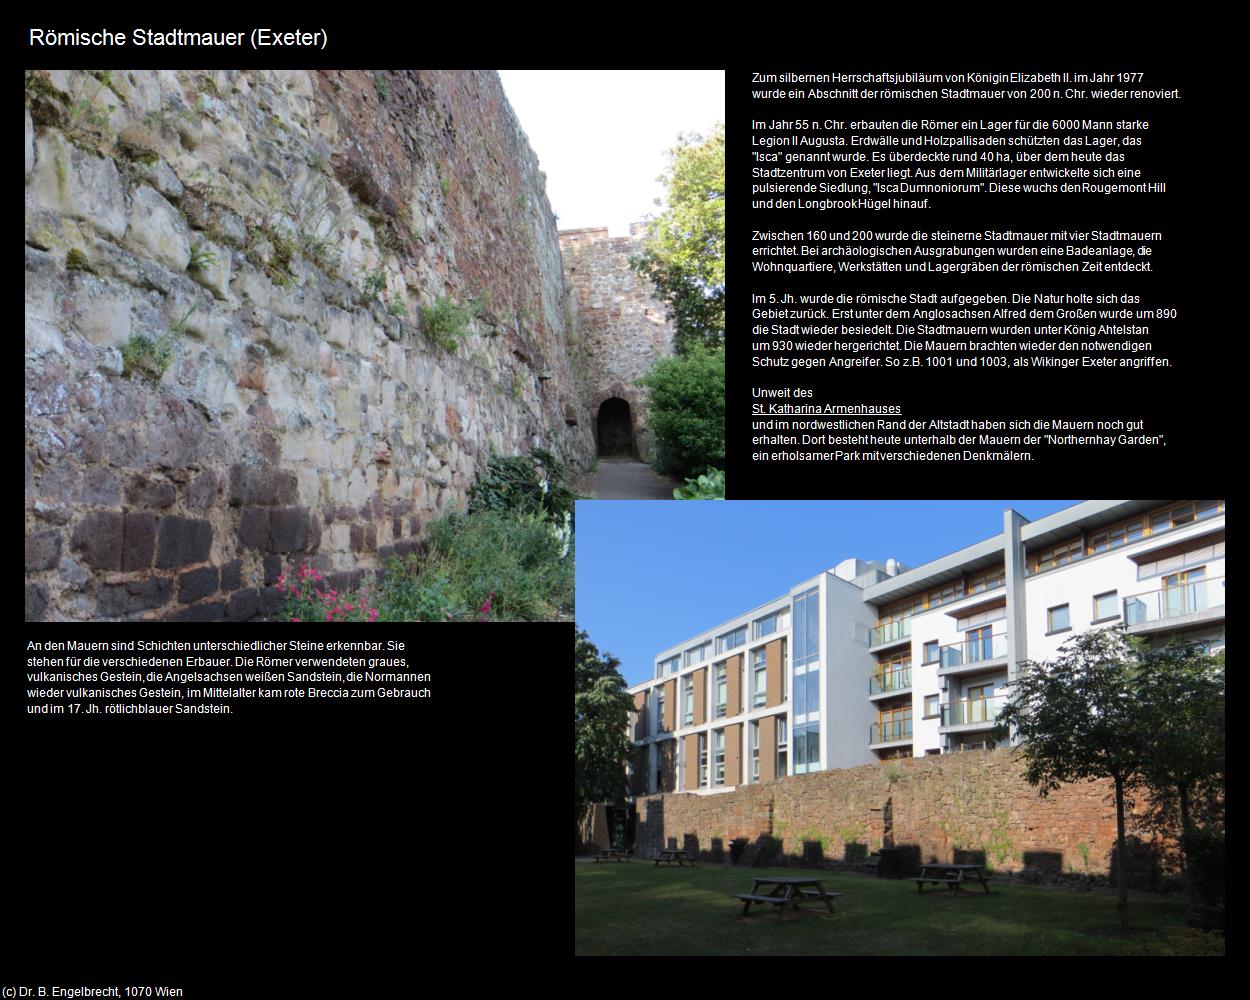 Römische Stadtmauer  (Exeter, England) in Kulturatlas-ENGLAND und WALES(c)B.Engelbrecht